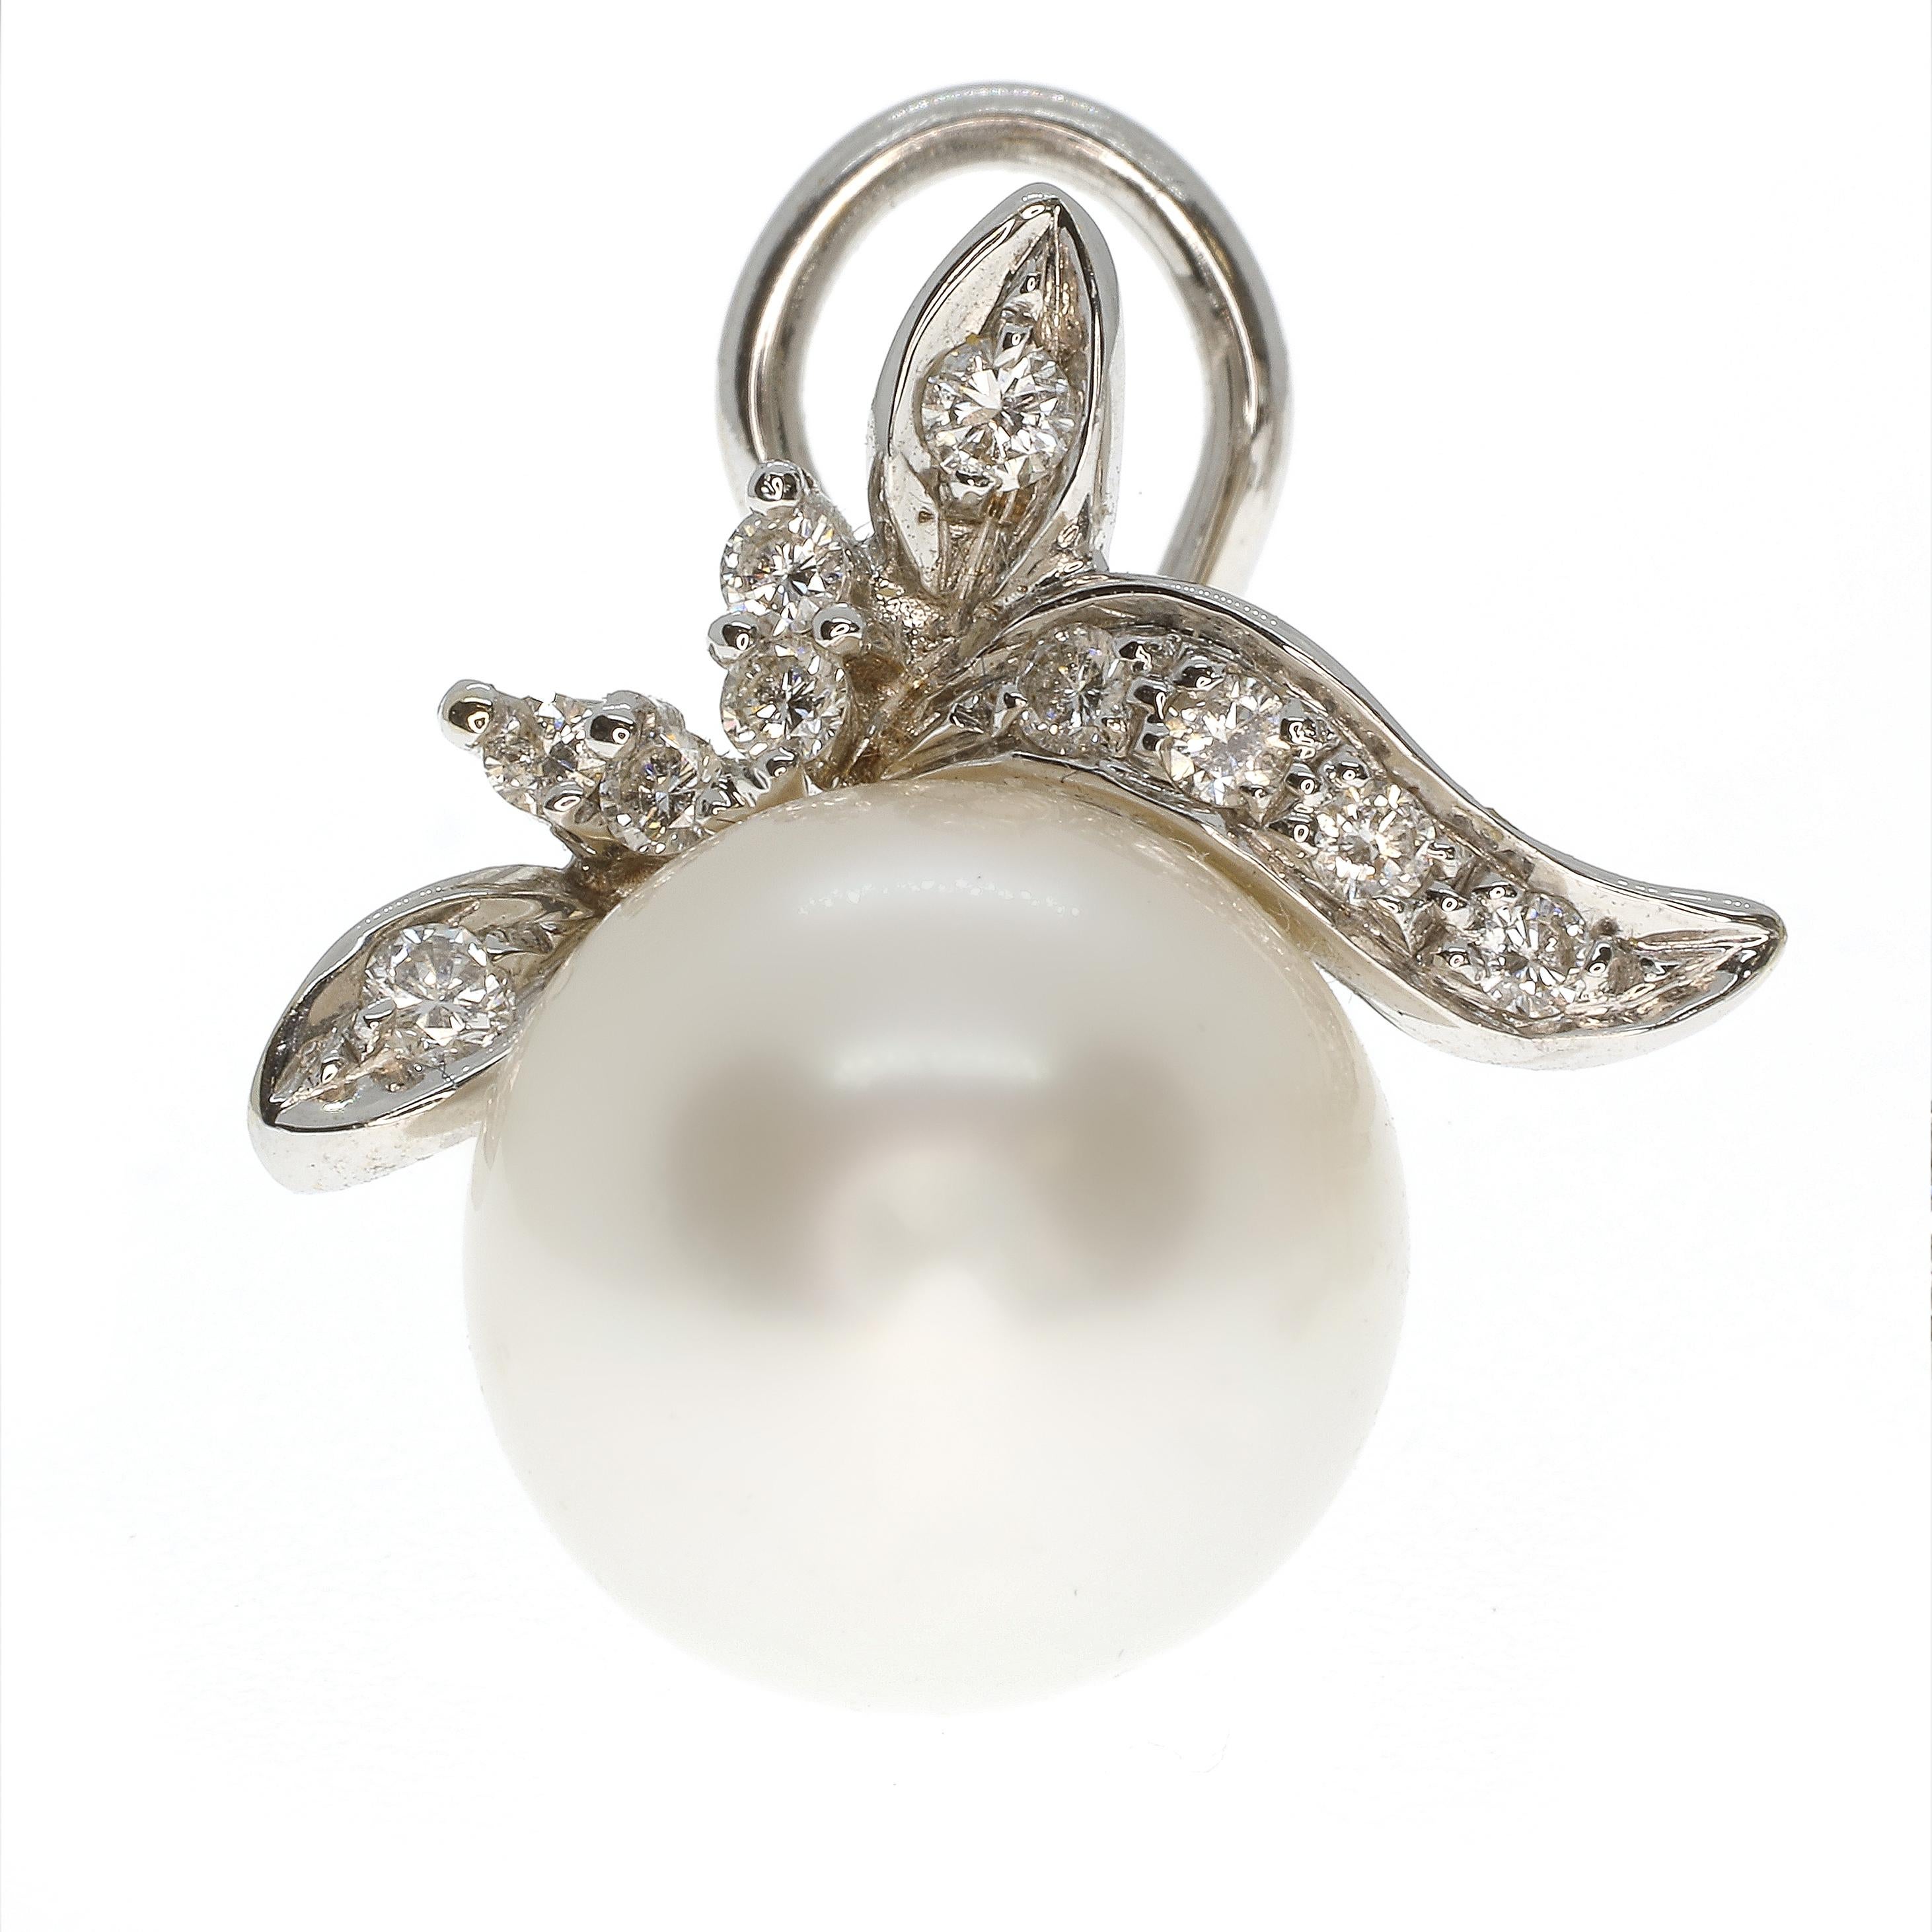 Une paire de perles australiennes pesant 27,82 carats et mesurant 12,5 mm de diamètre est sertie dans un délicat motif en or blanc 18 carats orné de 0,50 carats de diamants blancs, classés G VS. Ces magnifiques boucles d'oreilles sont